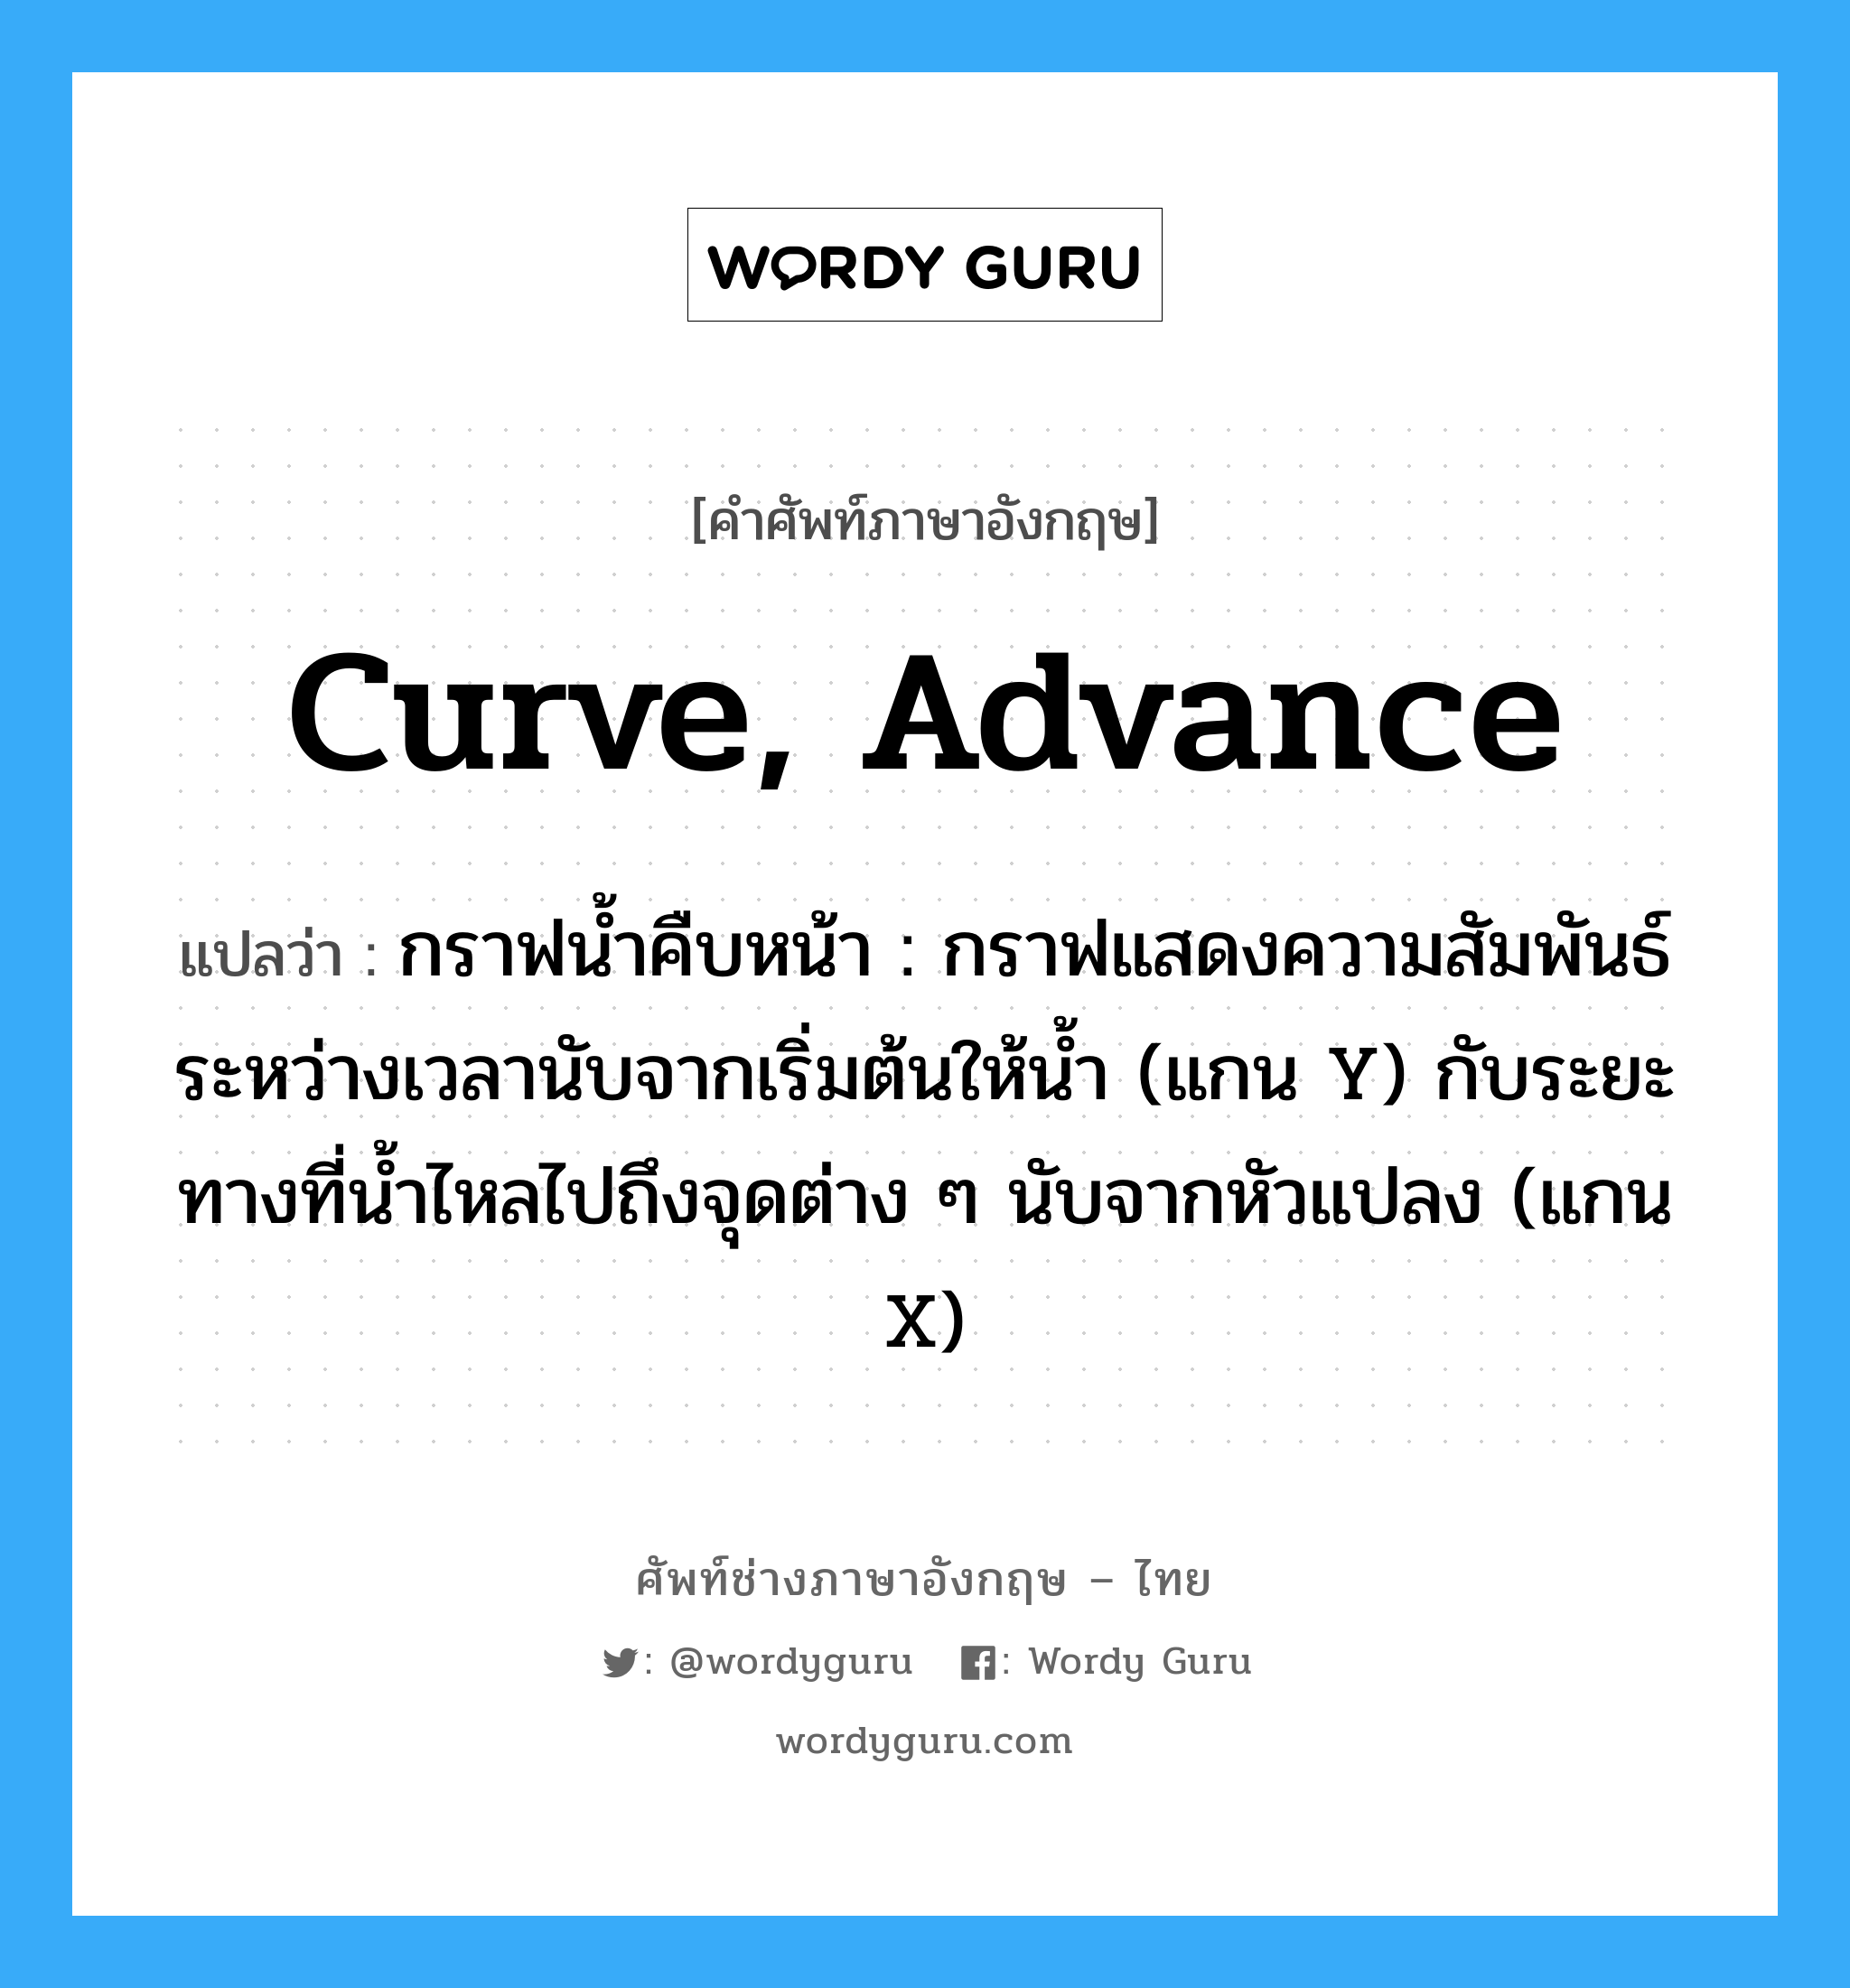 curve, advance แปลว่า?, คำศัพท์ช่างภาษาอังกฤษ - ไทย curve, advance คำศัพท์ภาษาอังกฤษ curve, advance แปลว่า กราฟน้ำคืบหน้า : กราฟแสดงความสัมพันธ์ระหว่างเวลานับจากเริ่มต้นให้น้ำ (แกน Y) กับระยะทางที่น้ำไหลไปถึงจุดต่าง ๆ นับจากหัวแปลง (แกน X)